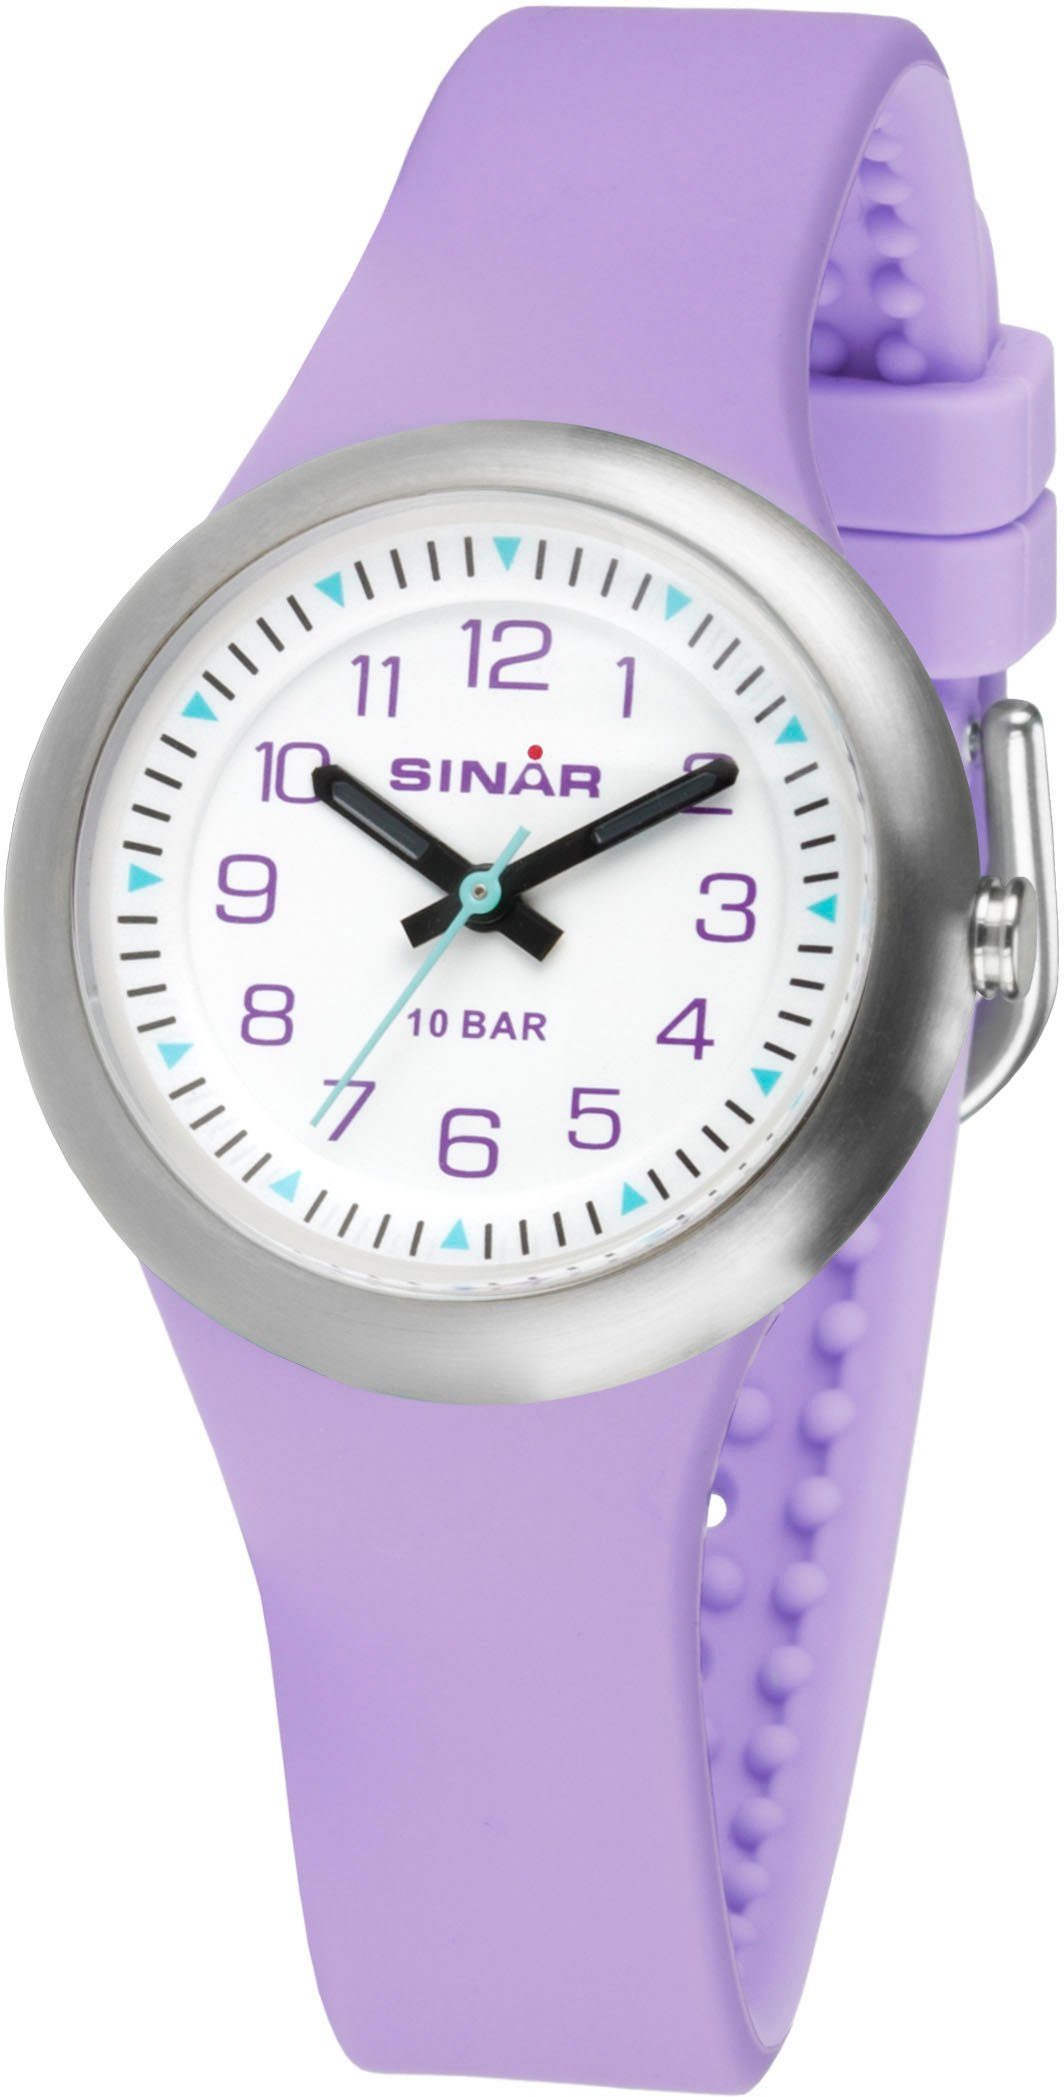 SINAR Quarzuhr XB-36-7, Armbanduhr, Kinderuhr, Mädchenuhr, ideal auch als Geschenk